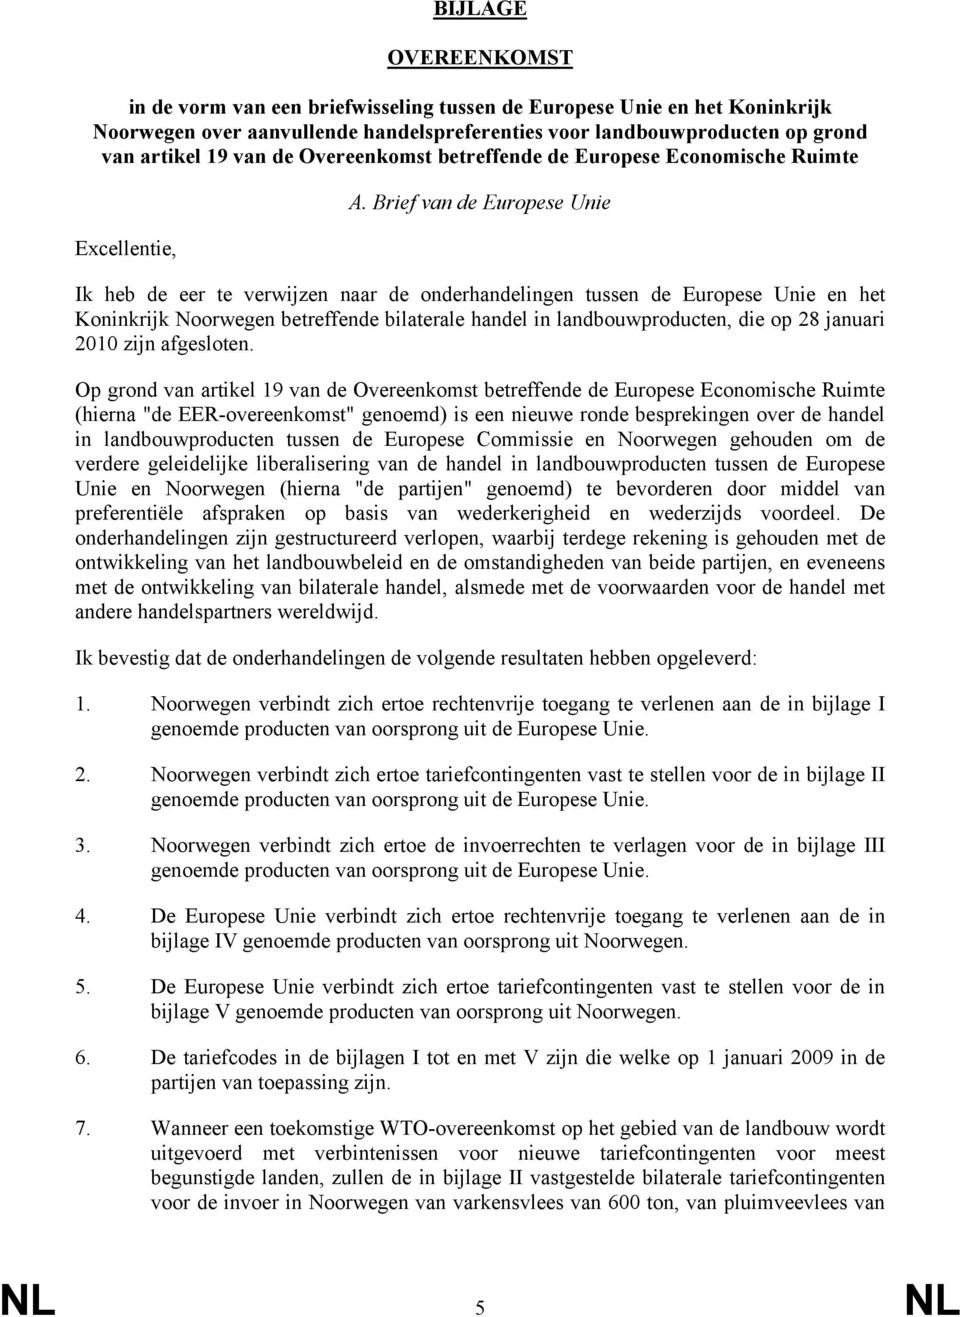 Brief van de Europese Unie Ik heb de eer te verwijzen naar de onderhandelingen tussen de Europese Unie en het Koninkrijk Noorwegen betreffende bilaterale handel in landbouwproducten, die op 28